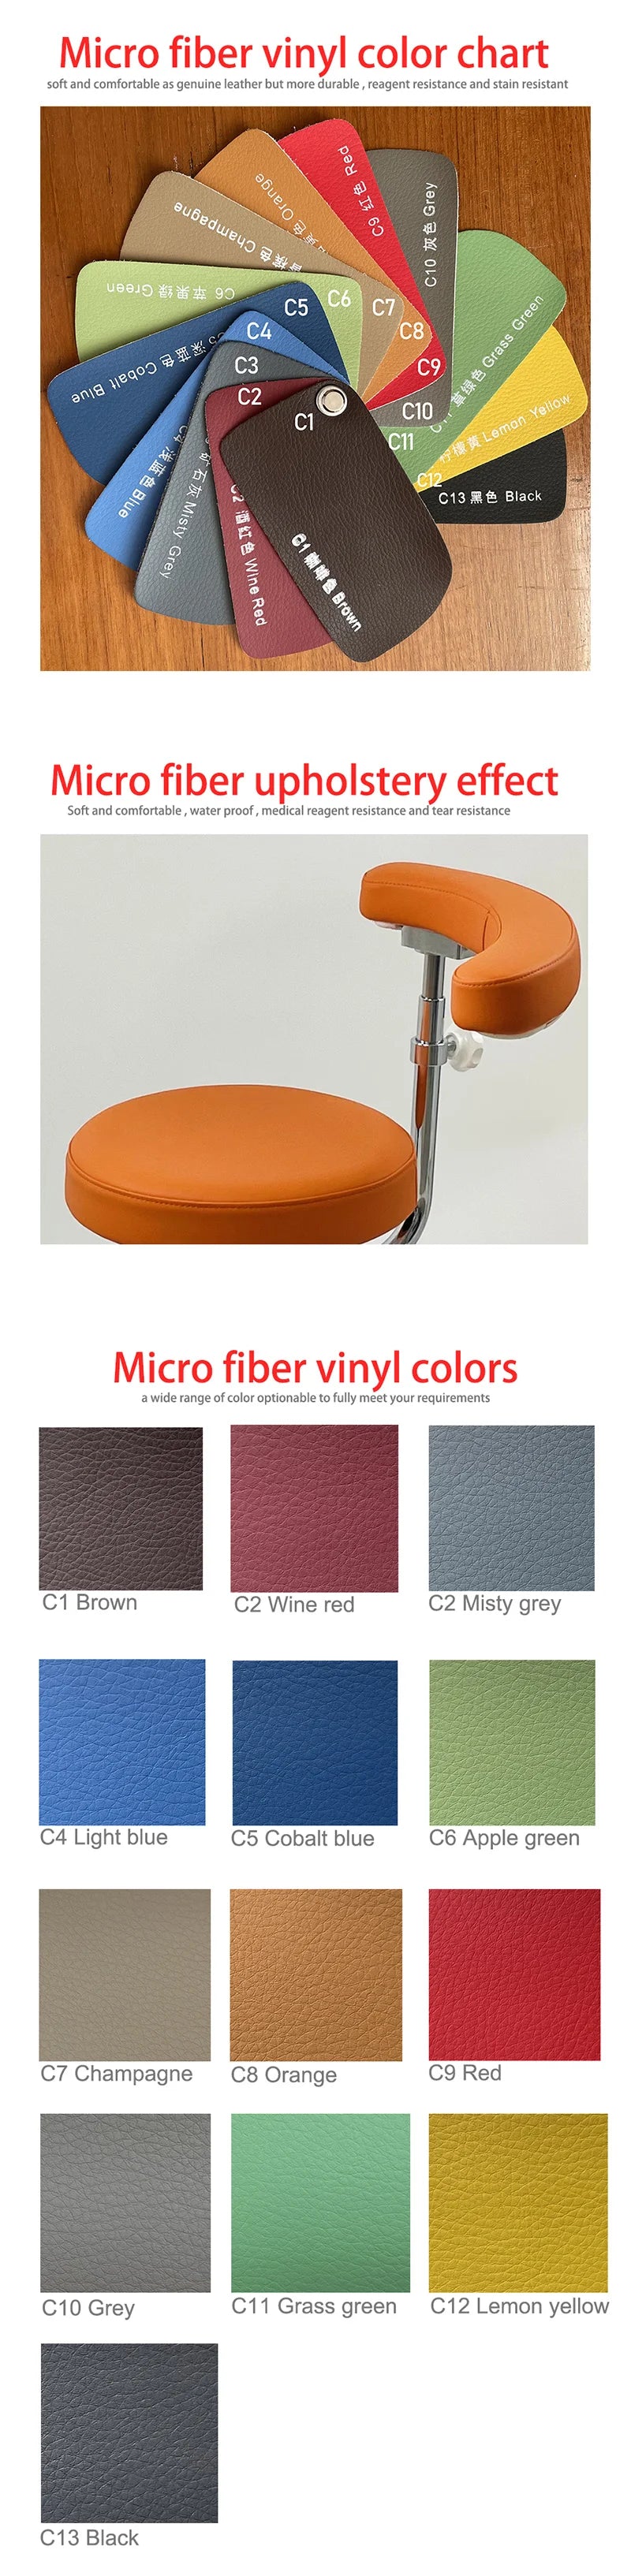 Carta de colores de vinilo de microfibra.